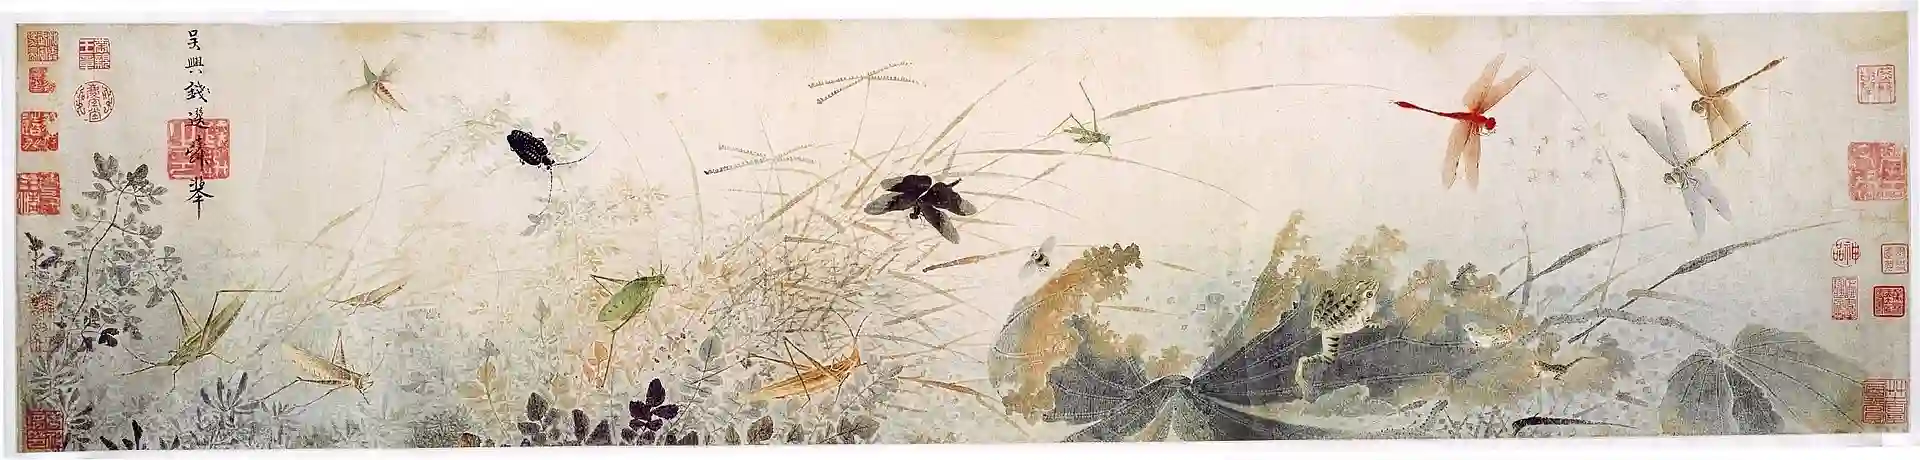 بخشی از یک نقاشی طوماردست، اوایل پاییز که توسط کیان ژوان (Qian Xuan) نقاش وفادار به دودمان سونگ ایجاد شده است.